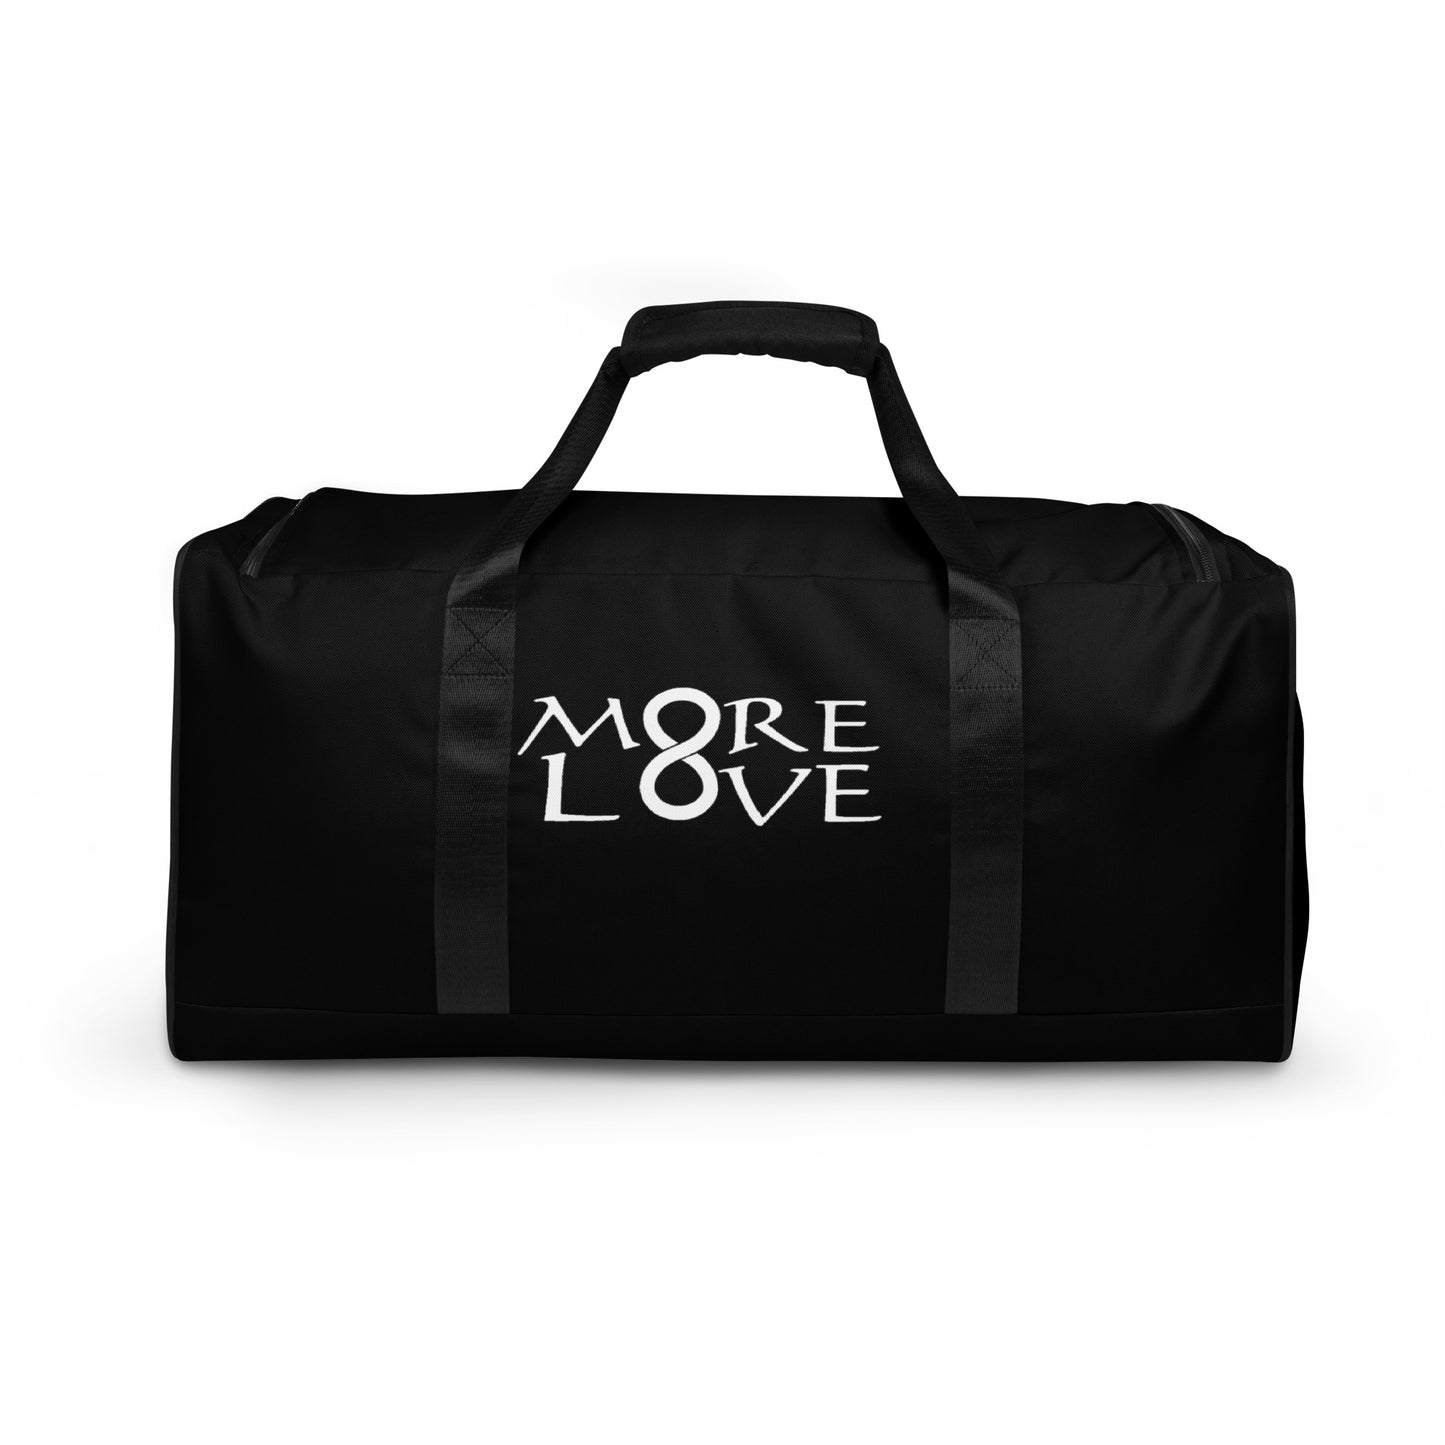 More Love Duffle bag